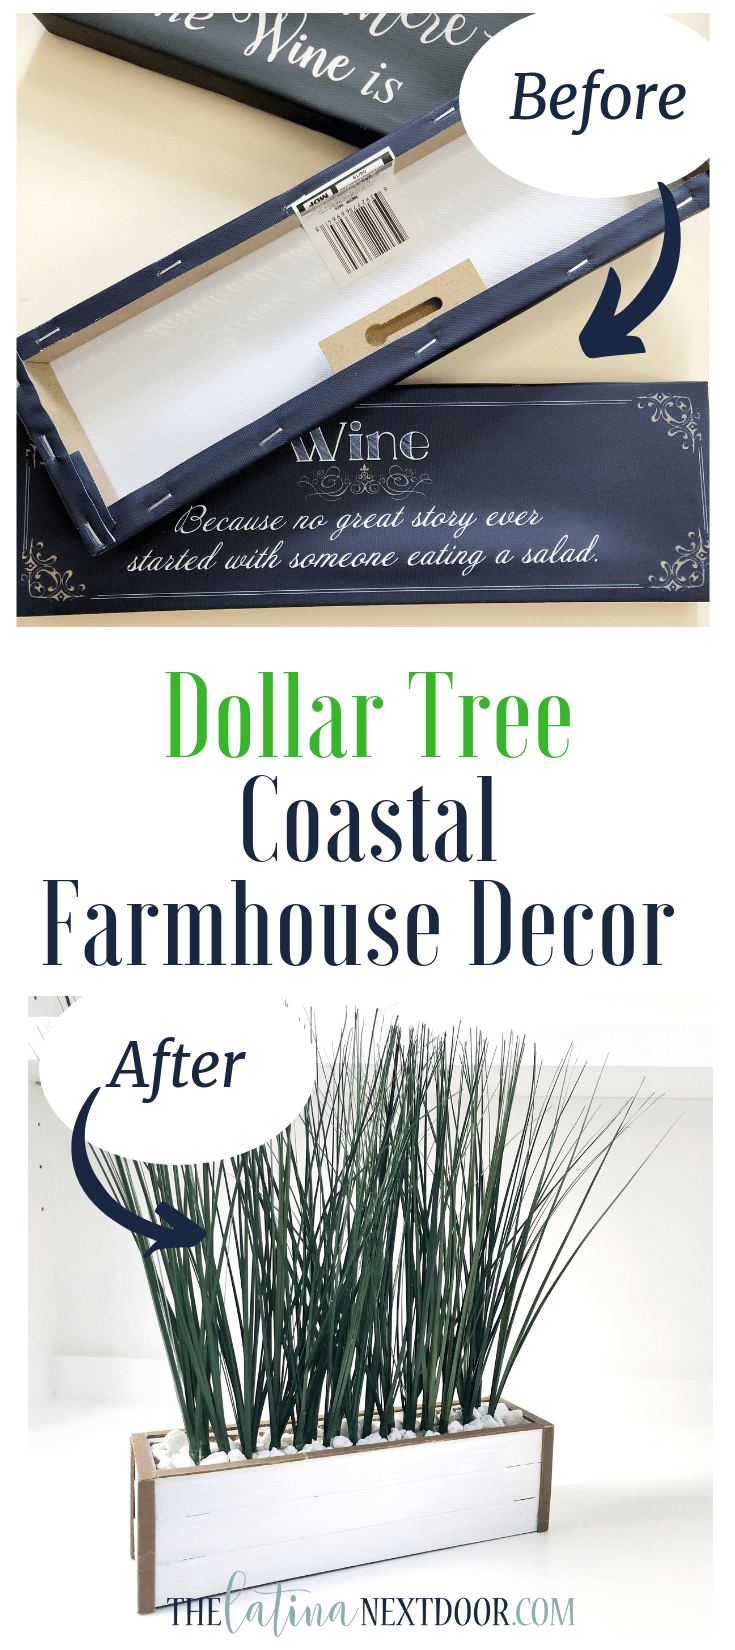 DIY Dollar Tree Coastal Farmhouse Decor -   14 room decor Christmas dollar stores ideas